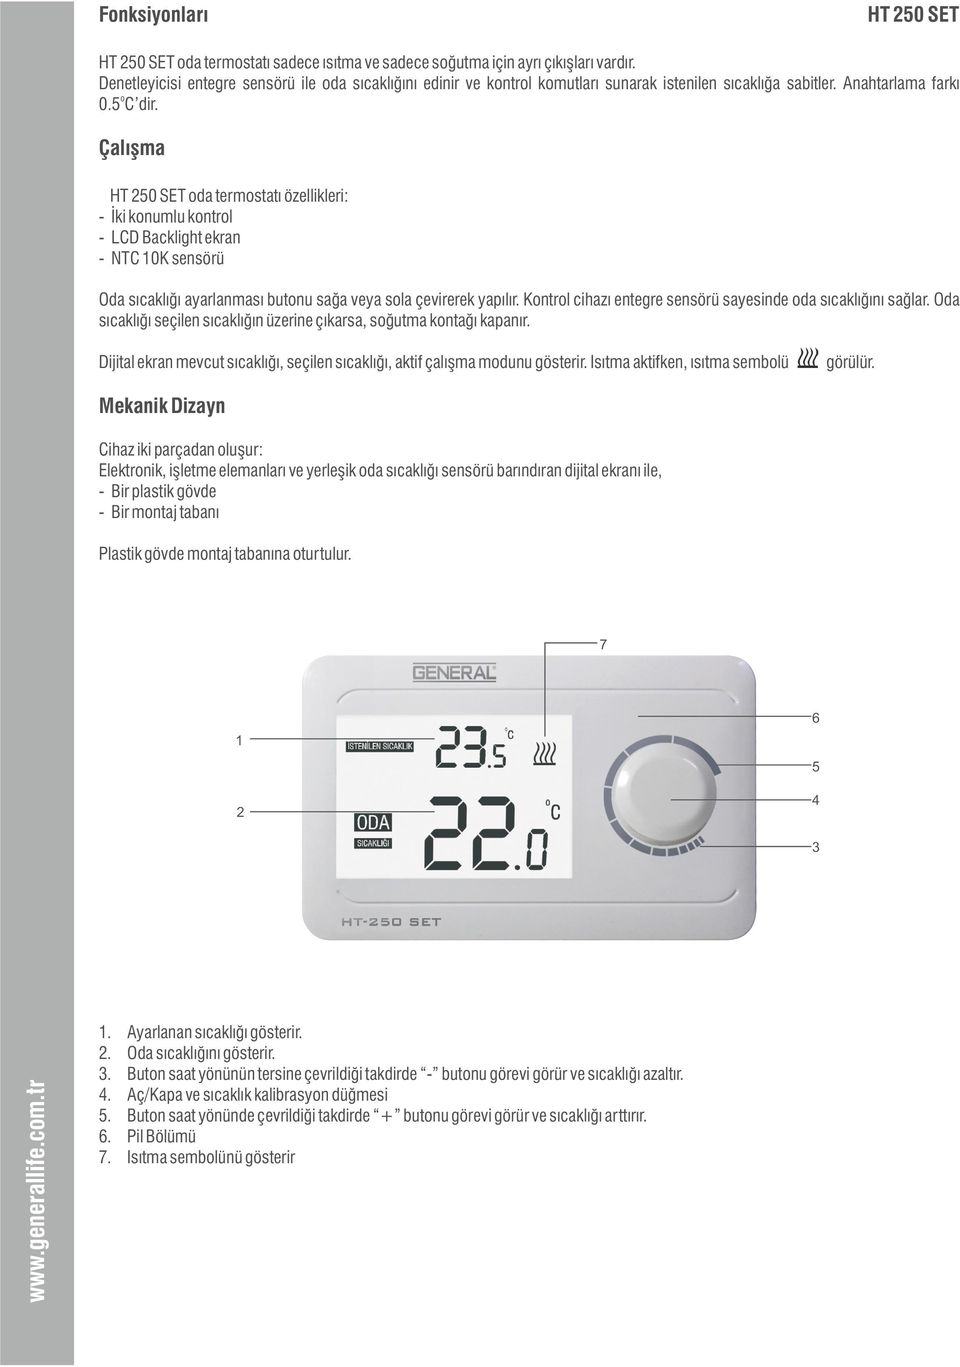 Çalışma HT 250 SET oda termostatı özellikleri: - İki konumlu kontrol - LCD Backlight ekran - NTC 10K sensörü Oda sıcaklığı ayarlanması butonu sağa veya sola çevirerek yapılır.